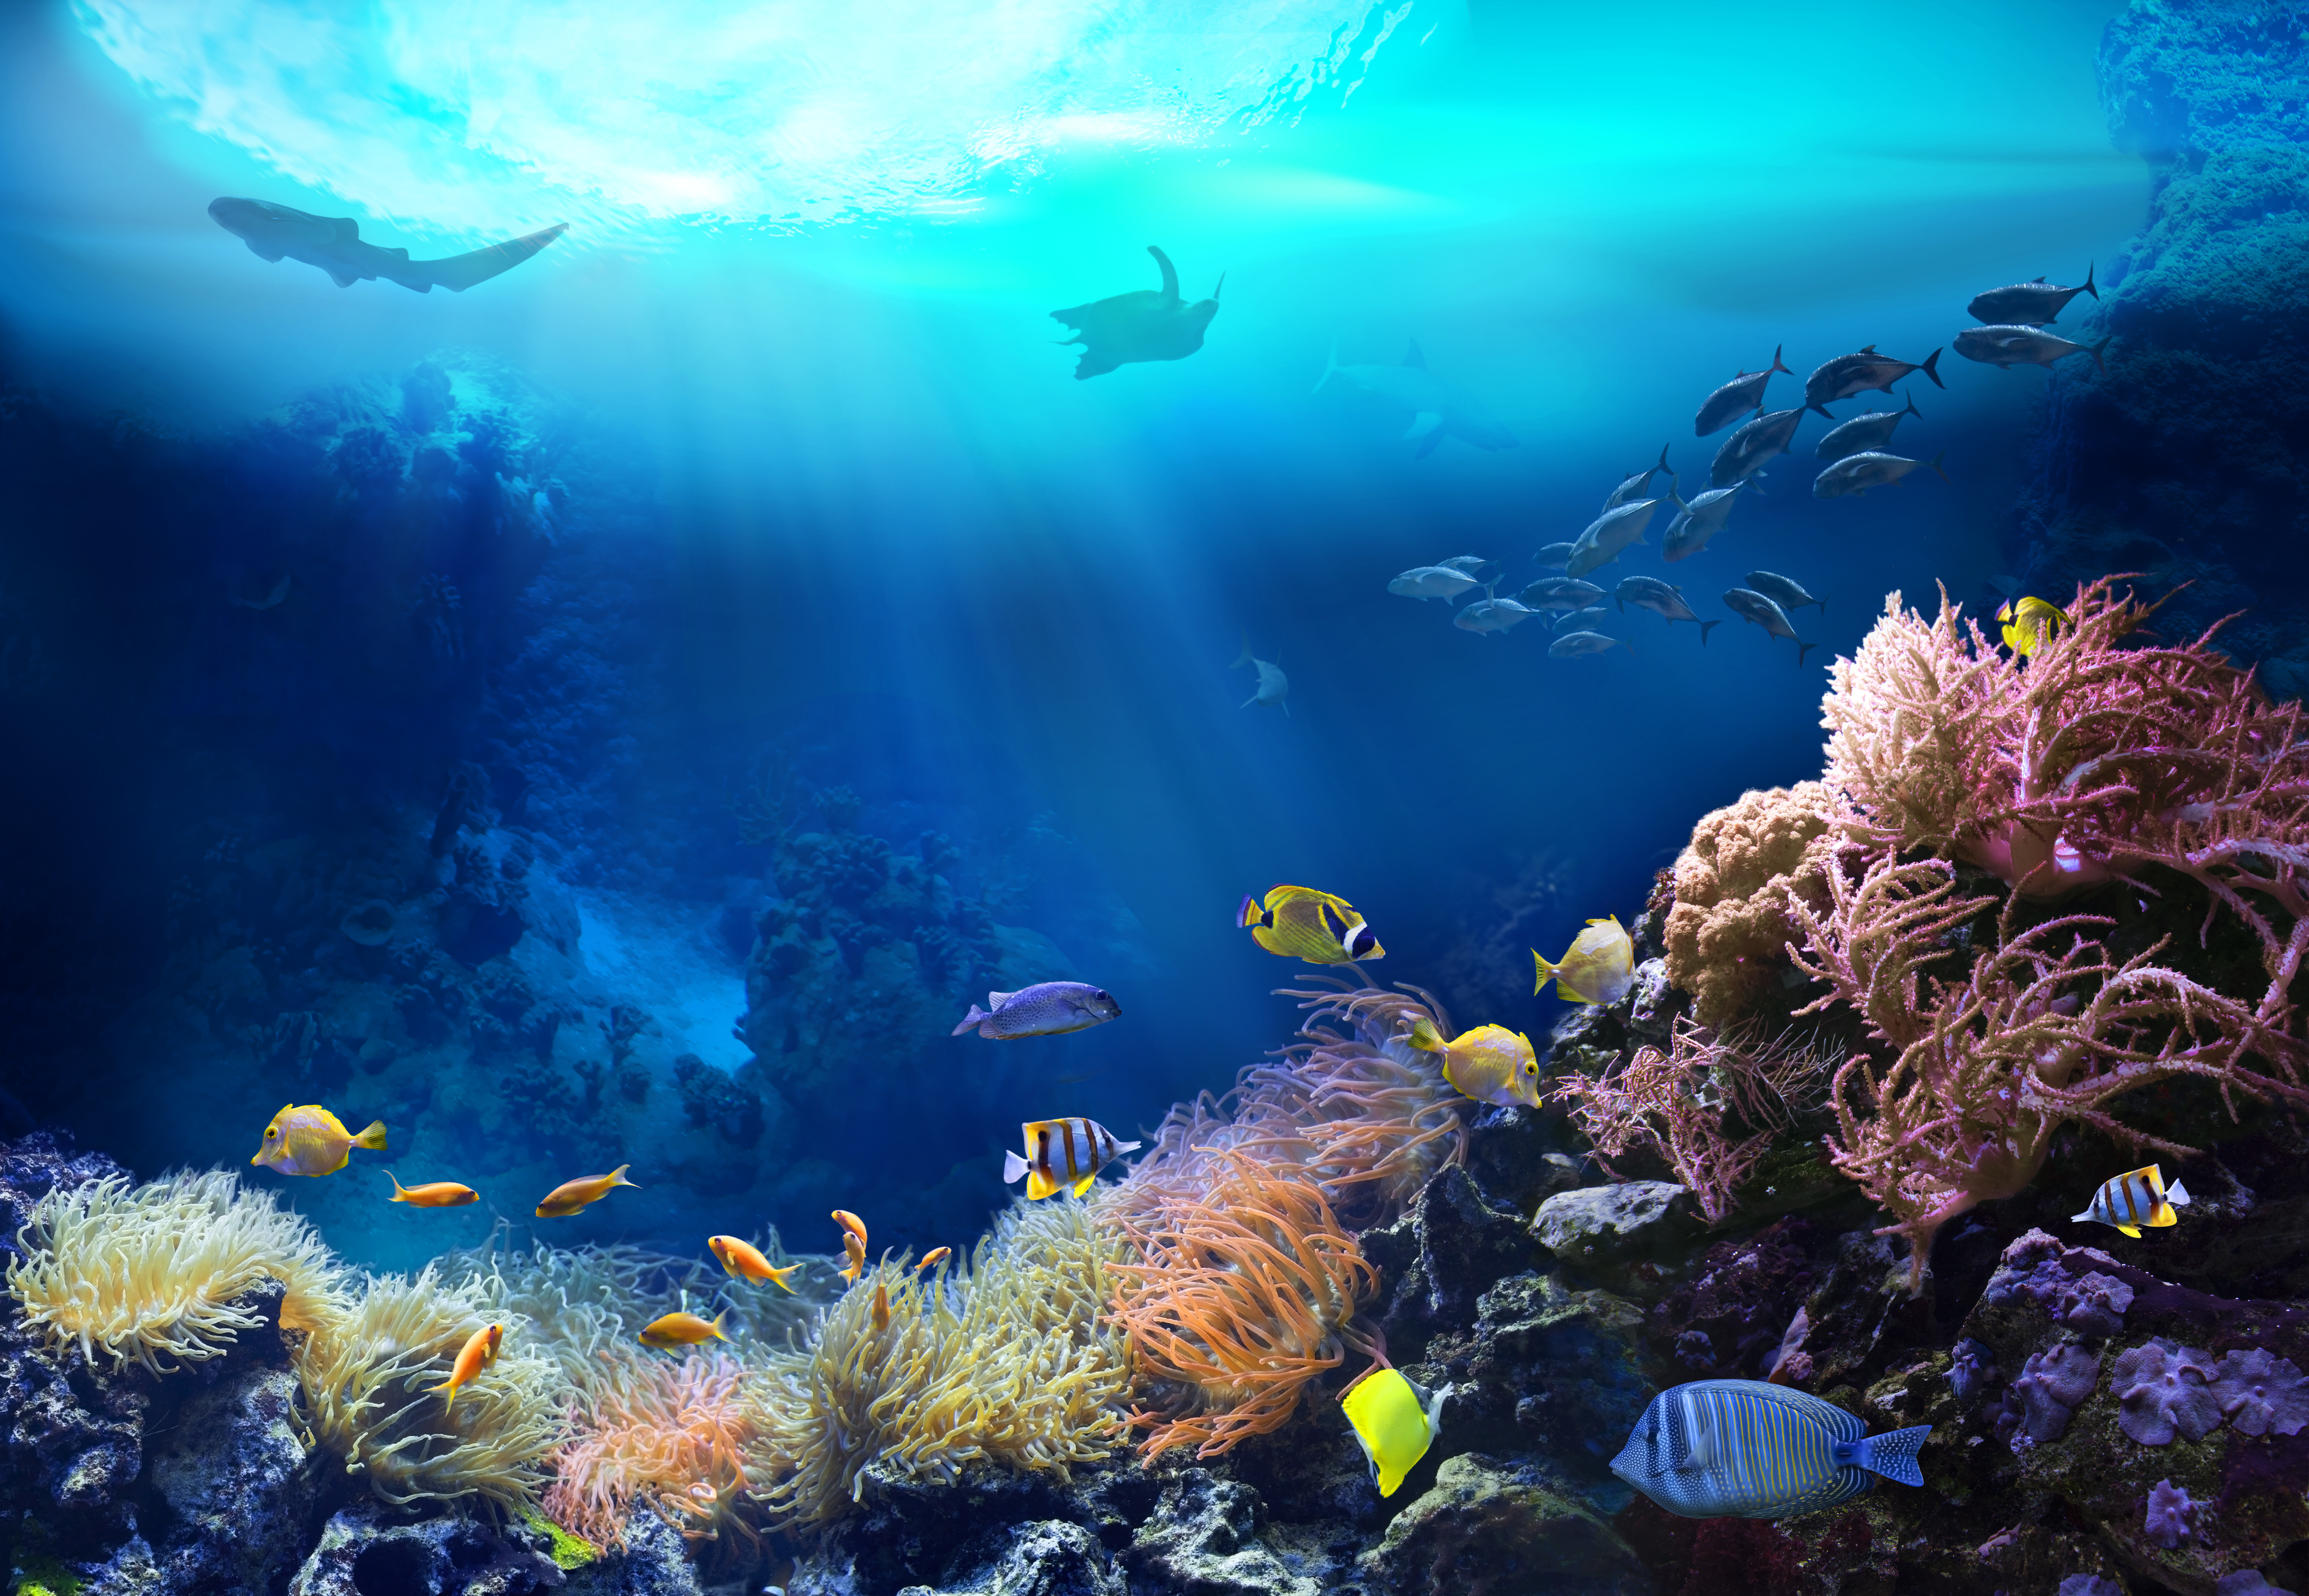 La fondation de la mer et Bureau Veritas lancent "Ocean approved"